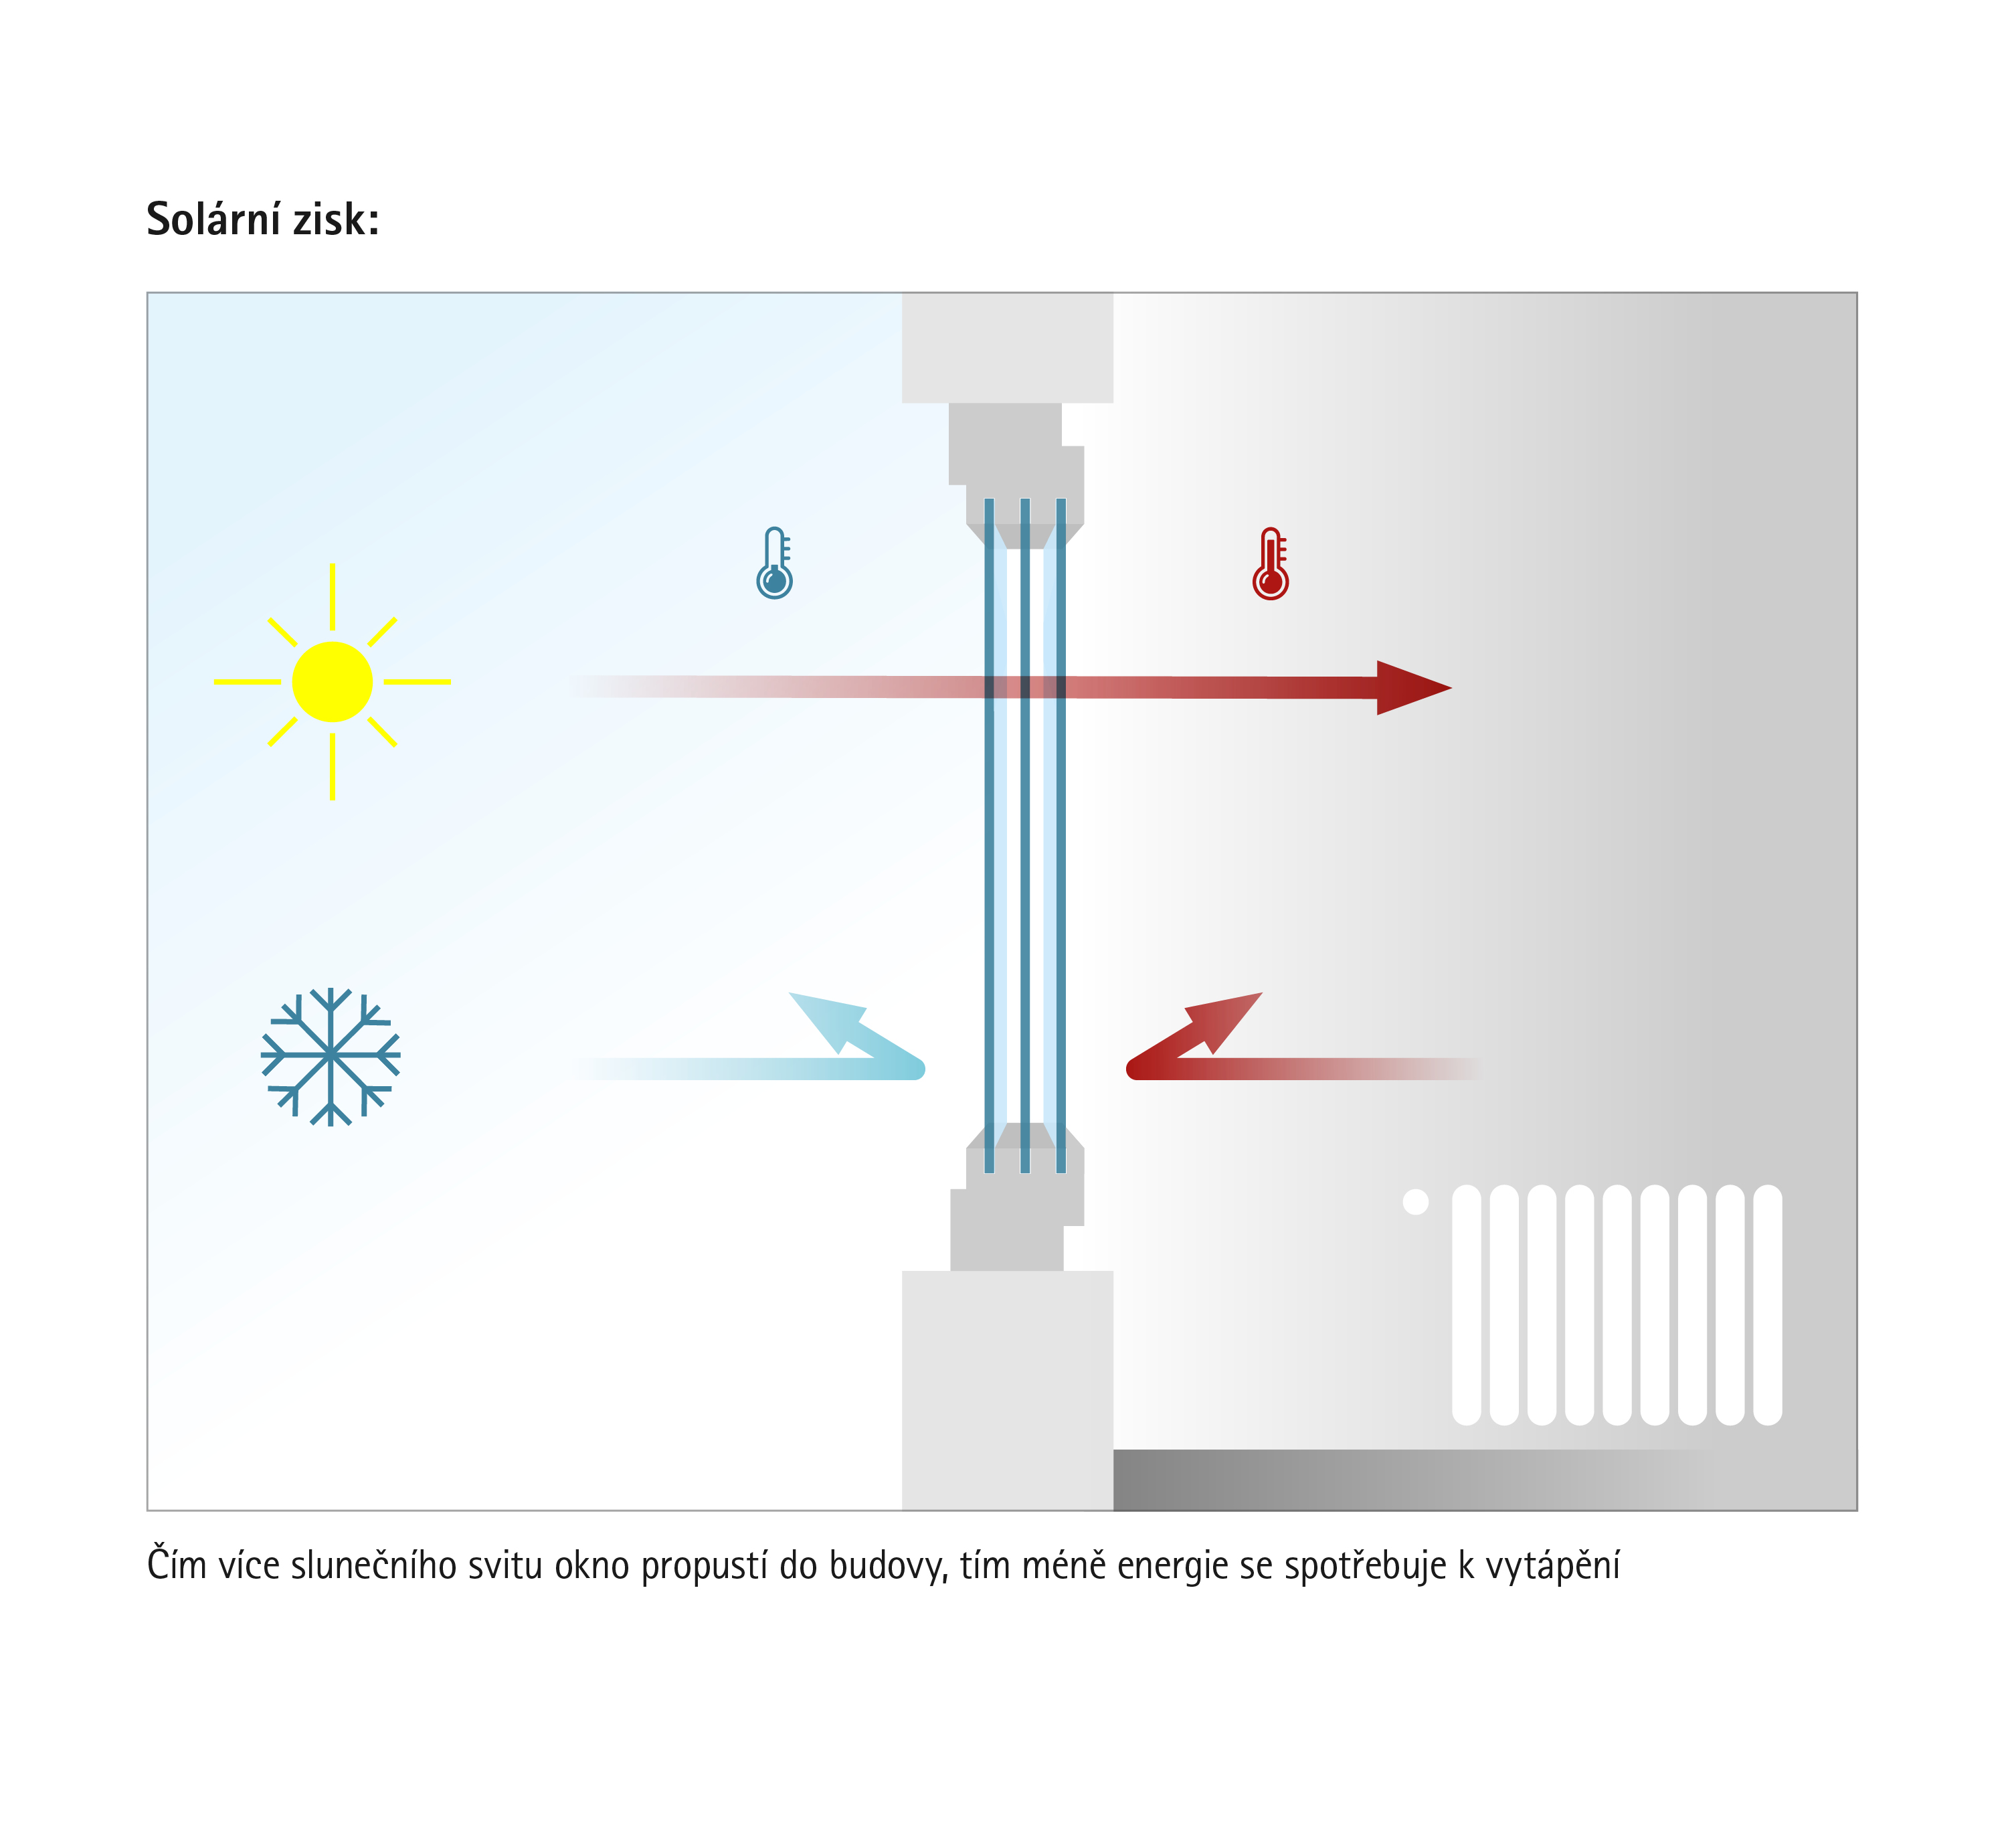 Zisky solární energie: moderní okna propouštějí do domu sluneční záření a zároveň snižují ztráty drahocenné tepelné energie.